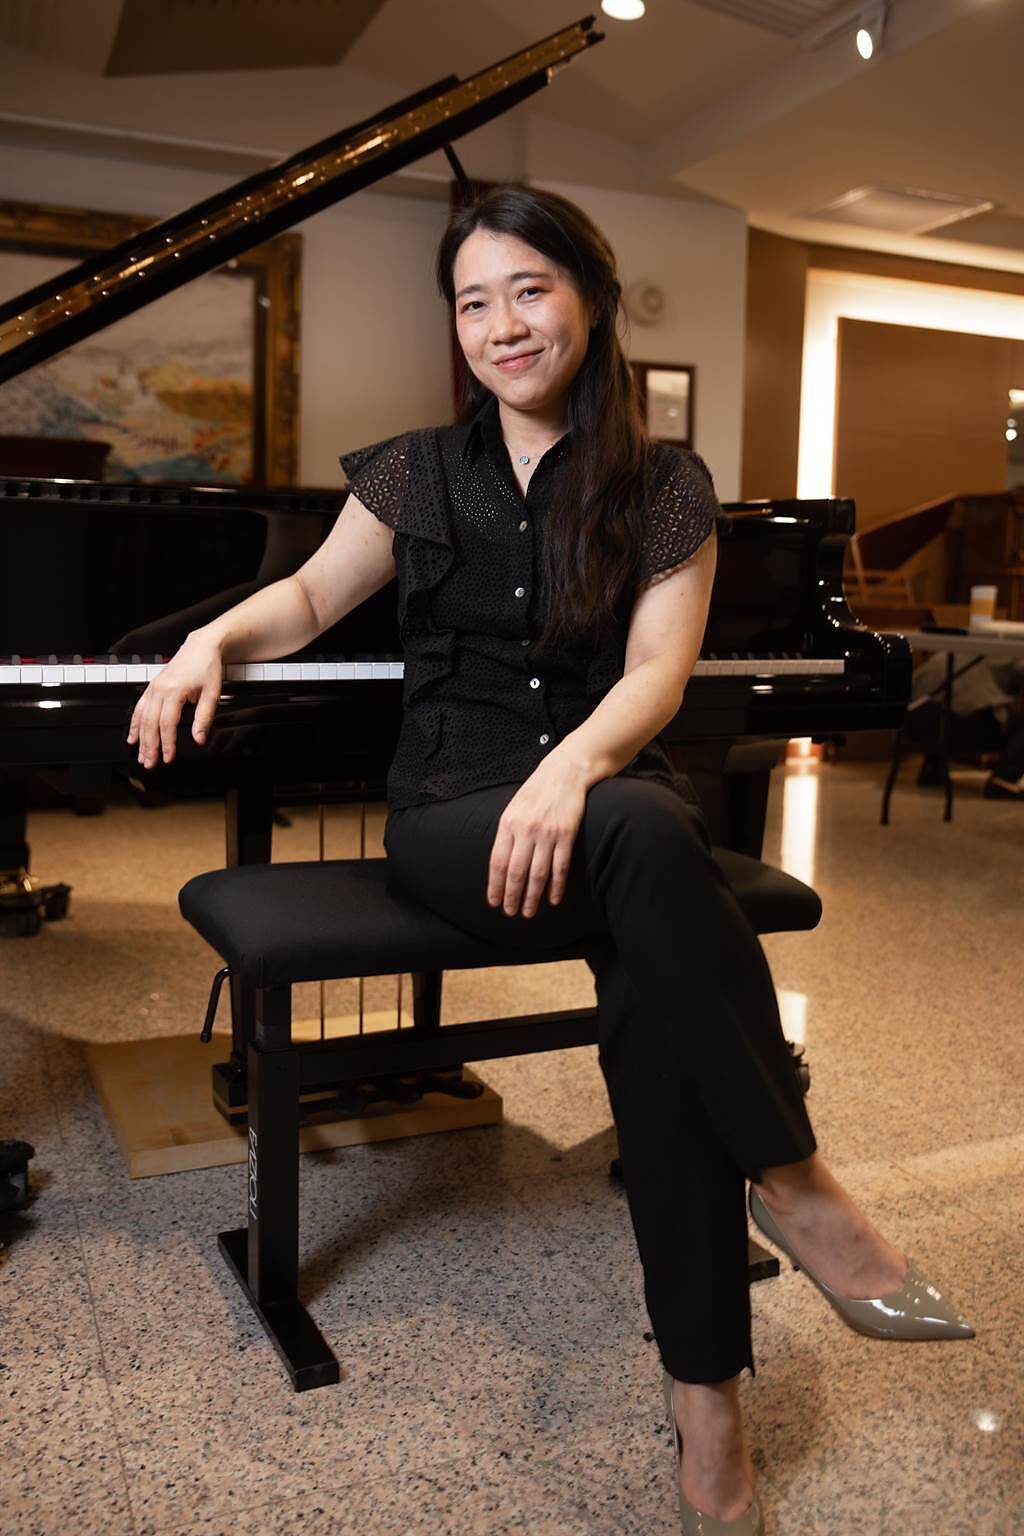 鋼琴家胡瀞云在追藝道路上，也曾感到孤單，但如今她活在最愛的音樂裡，也樂於給予，不再孤單。（郭吉銓攝）